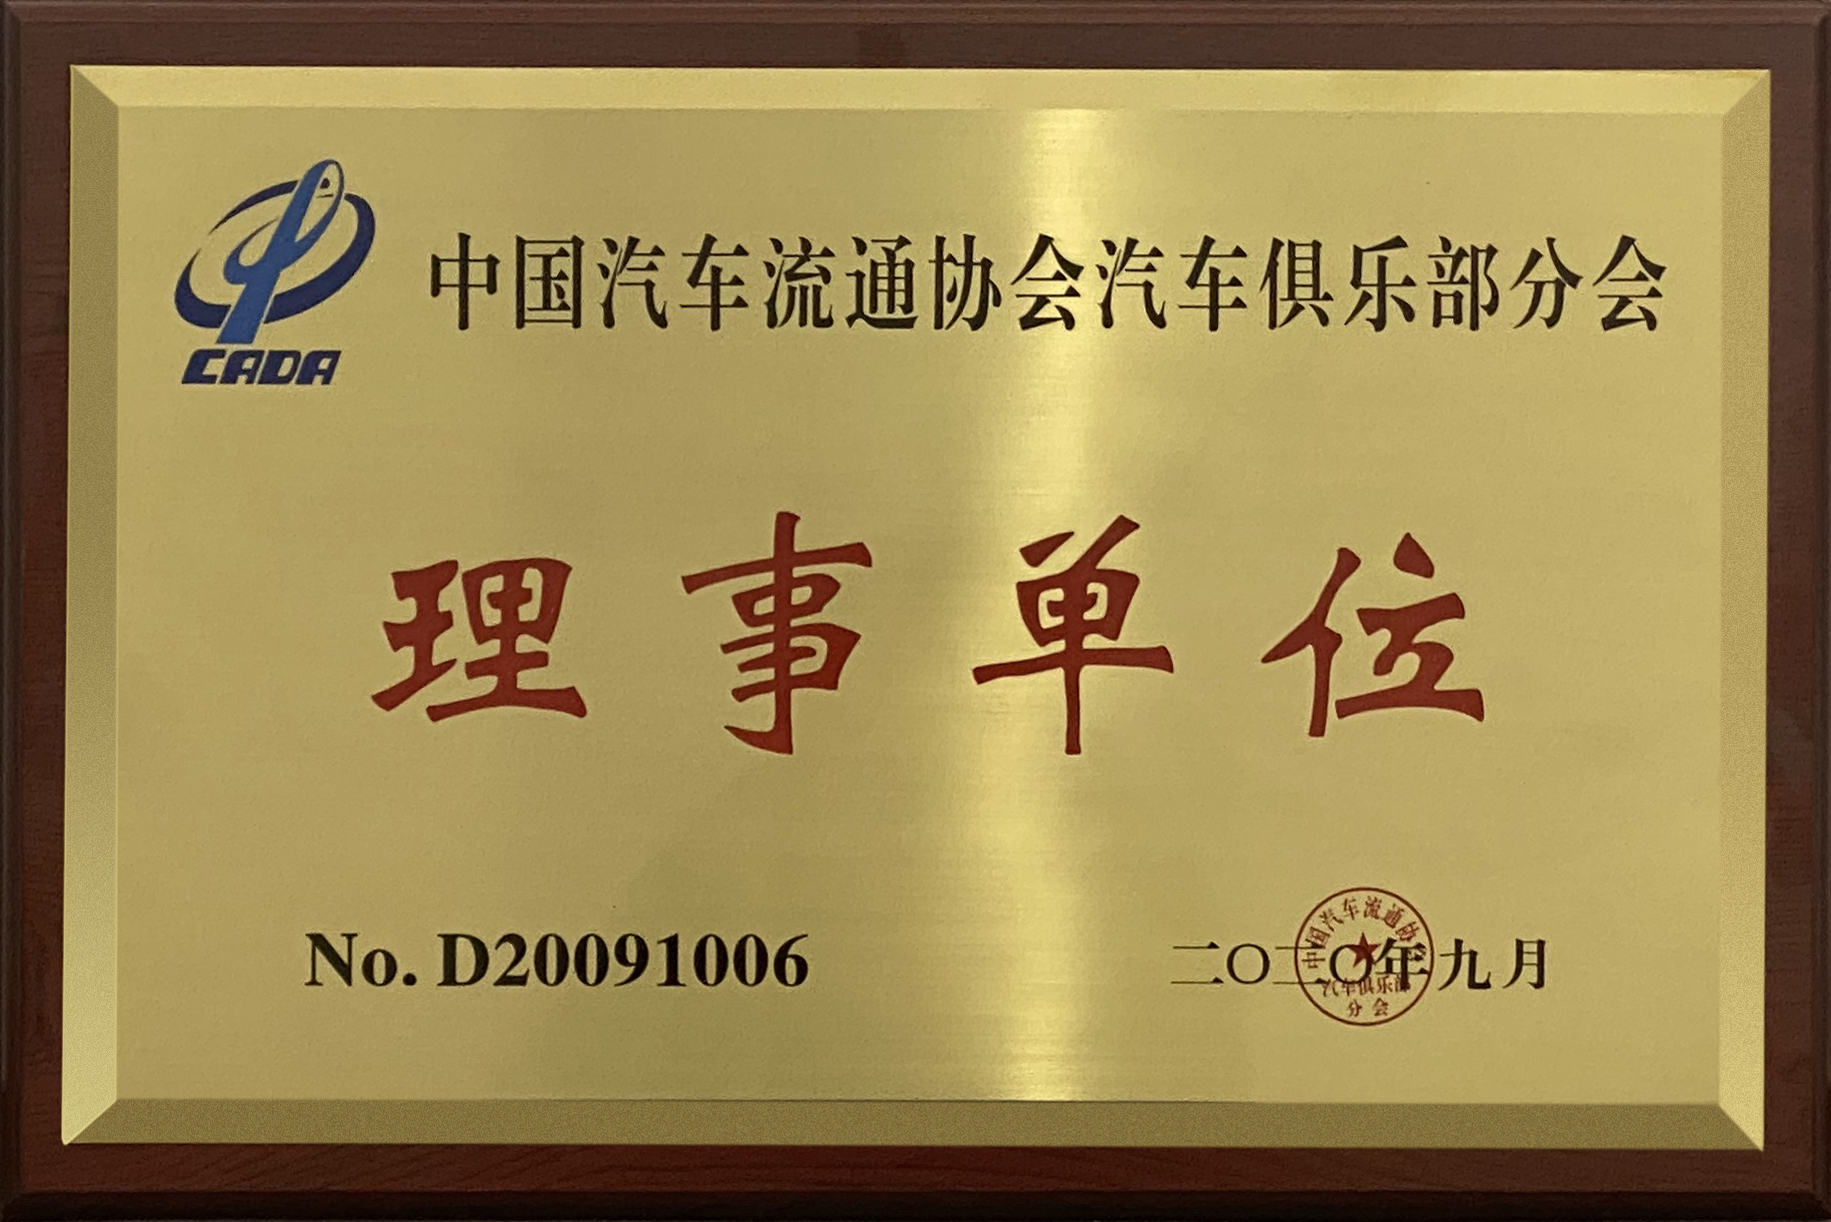 中国汽车流通协会汽车俱乐部分会 理事单位